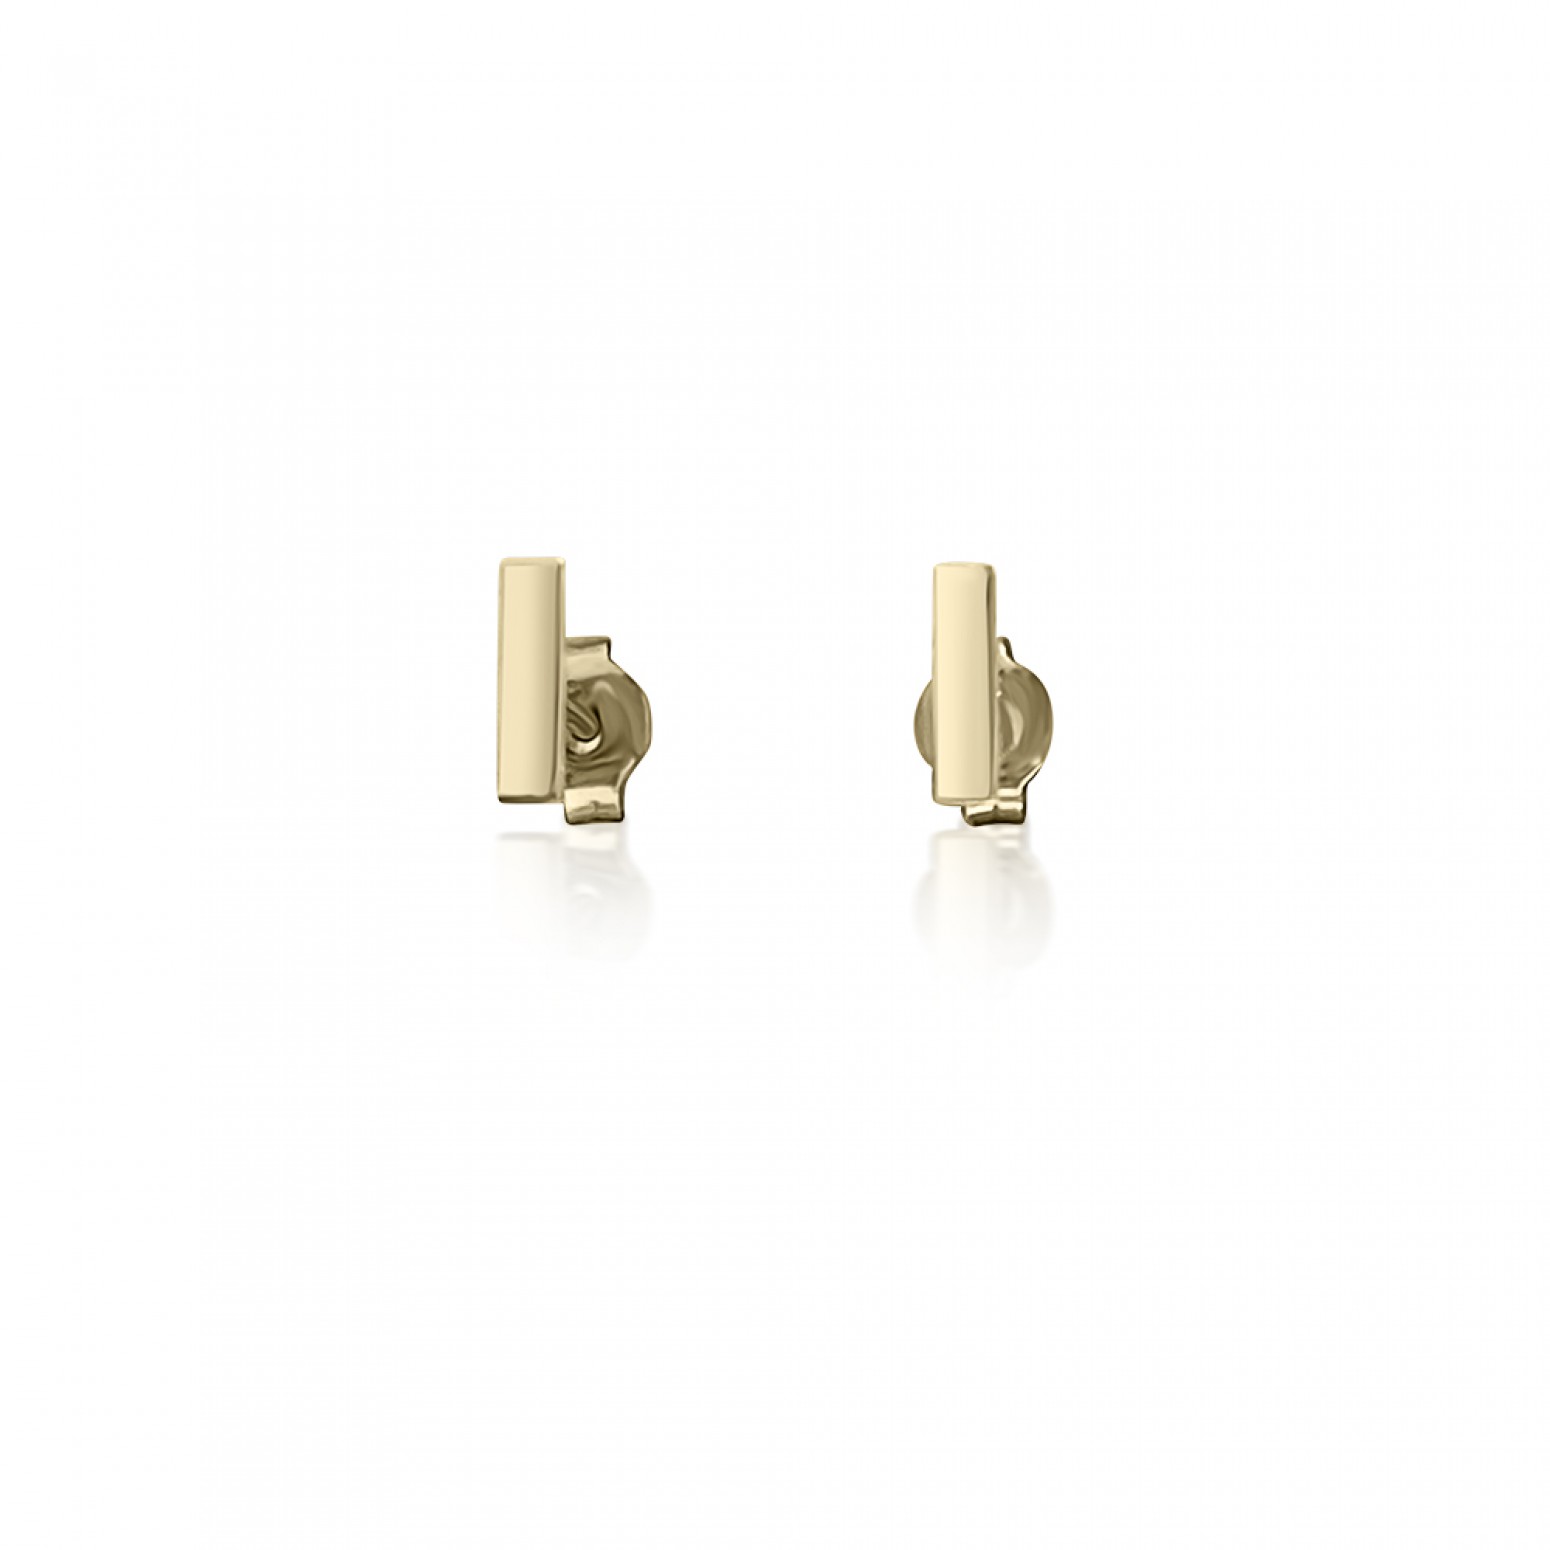 Bar earrings K9 gold, sk3365 EARRINGS Κοσμηματα - chrilia.gr